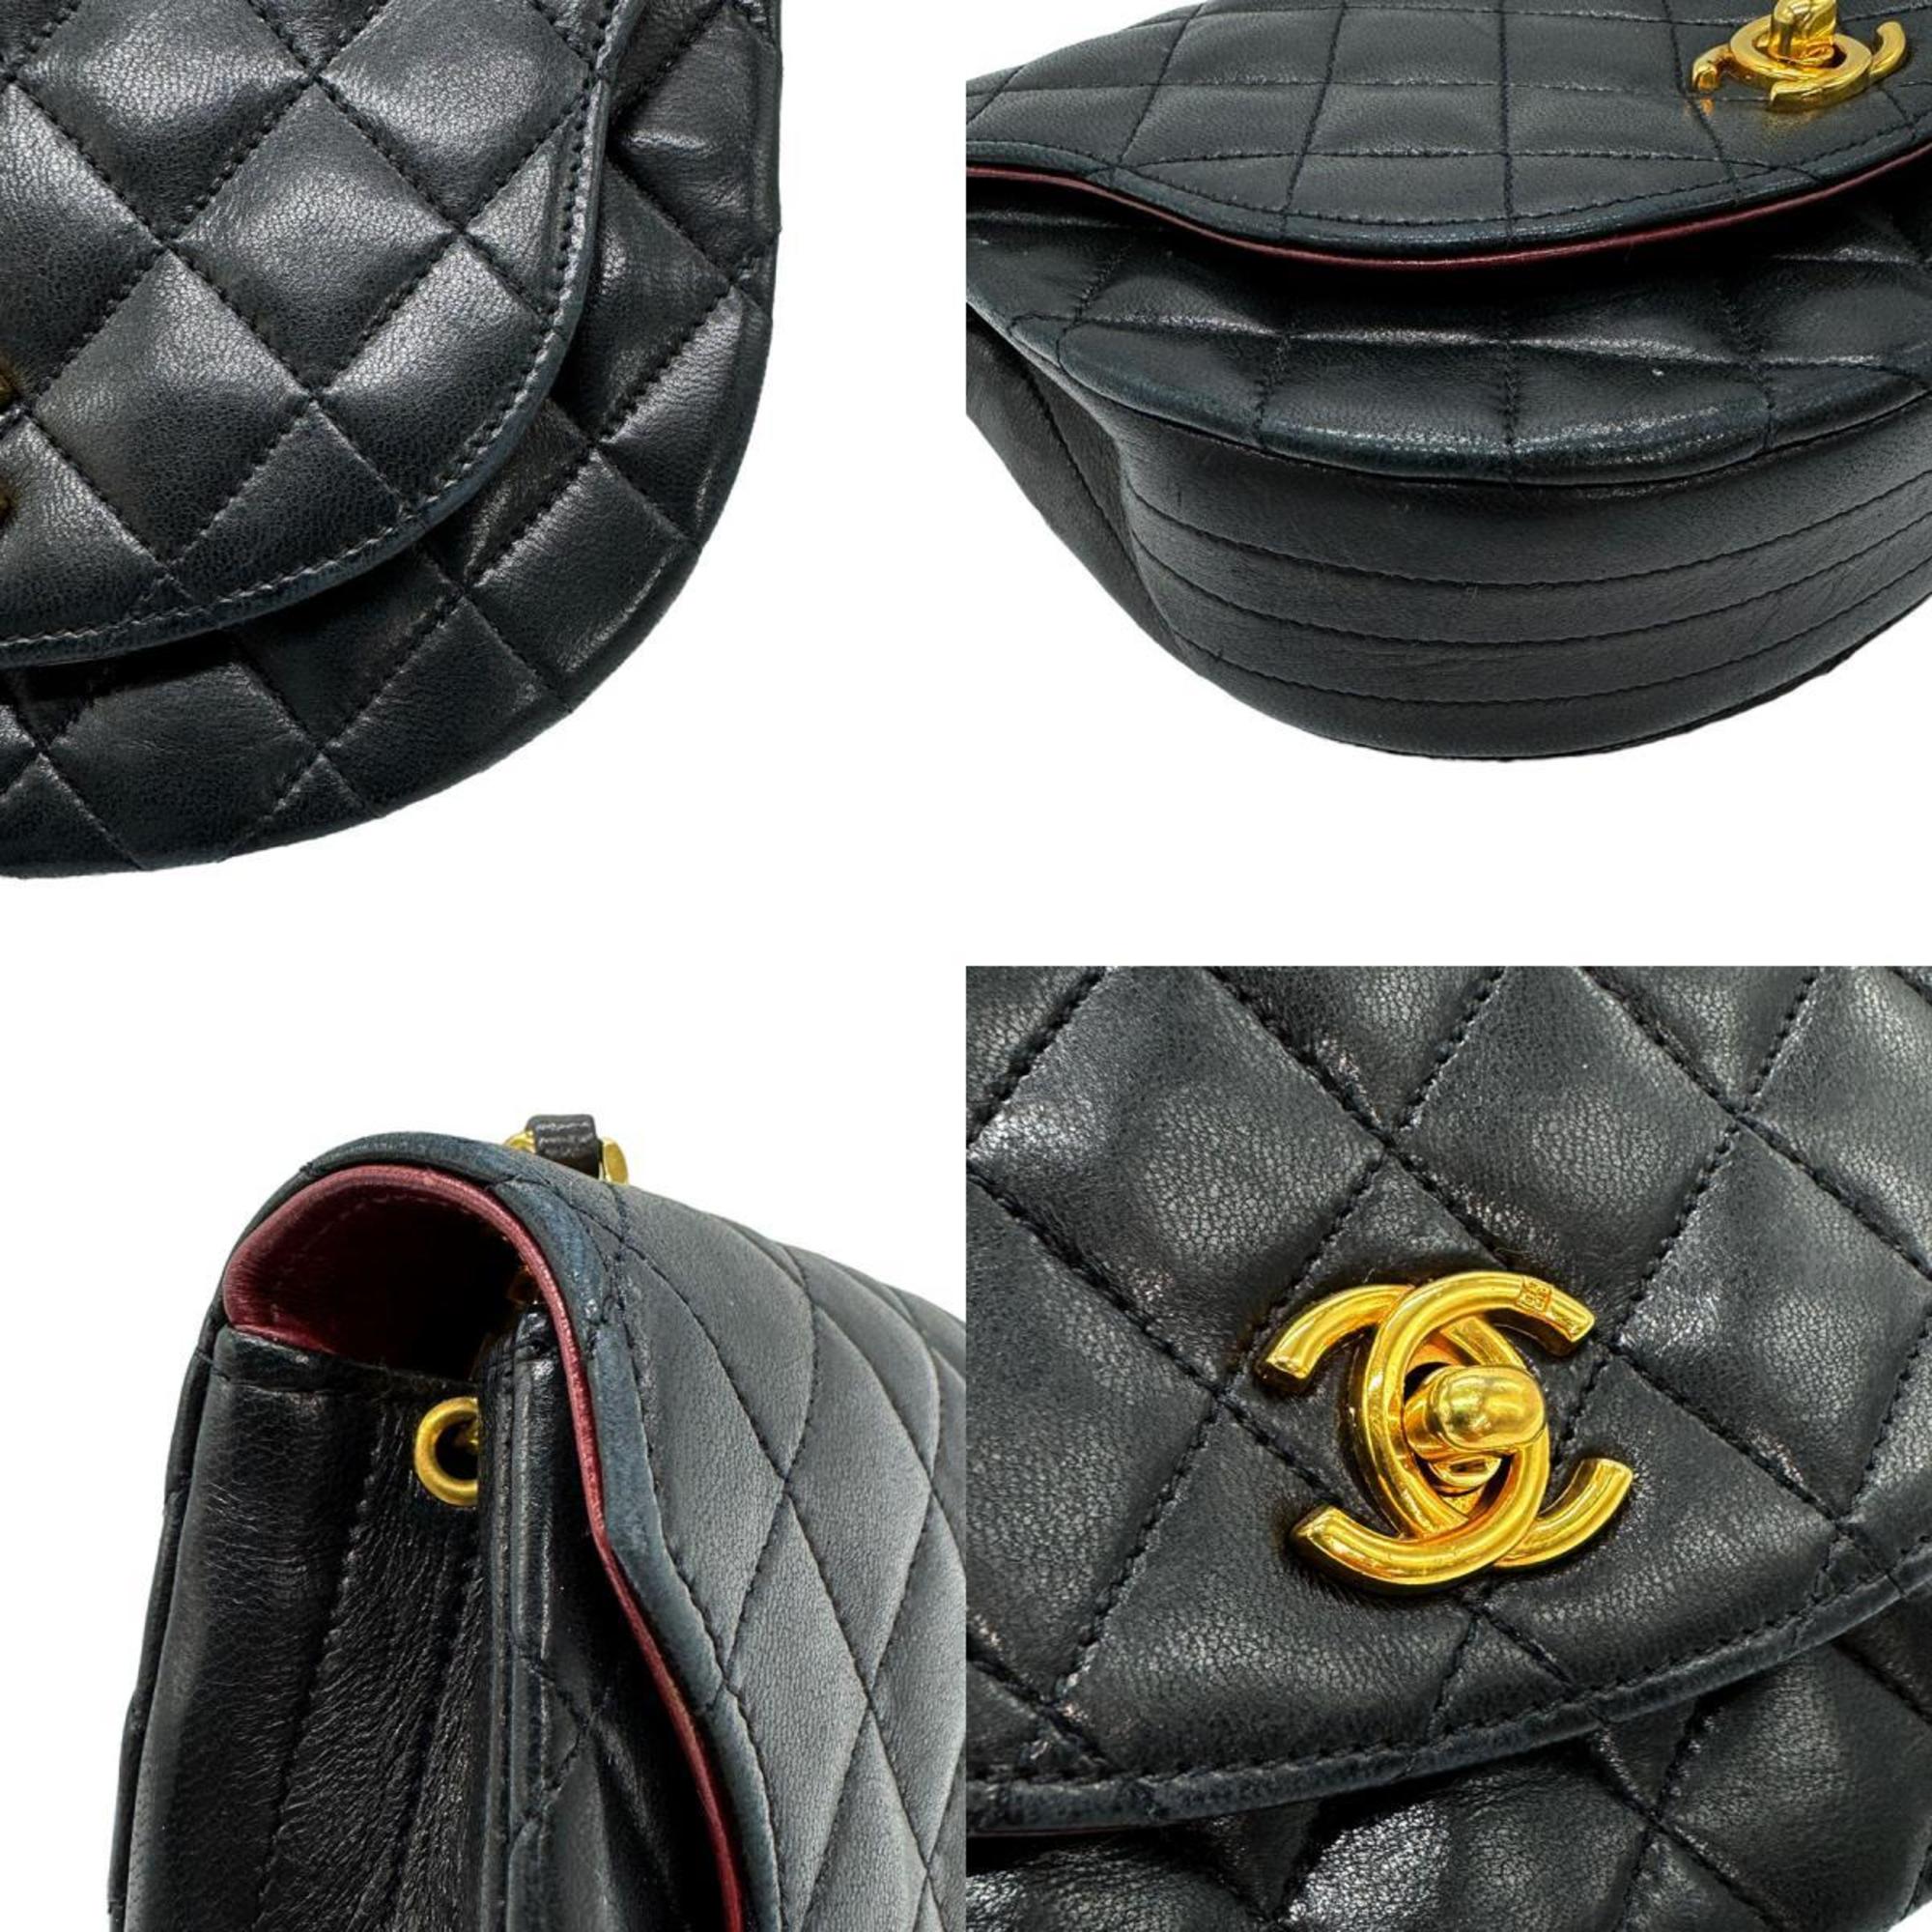 CHANEL Shoulder Bag Matelasse Leather/Metal Black/Gold Women's z0602